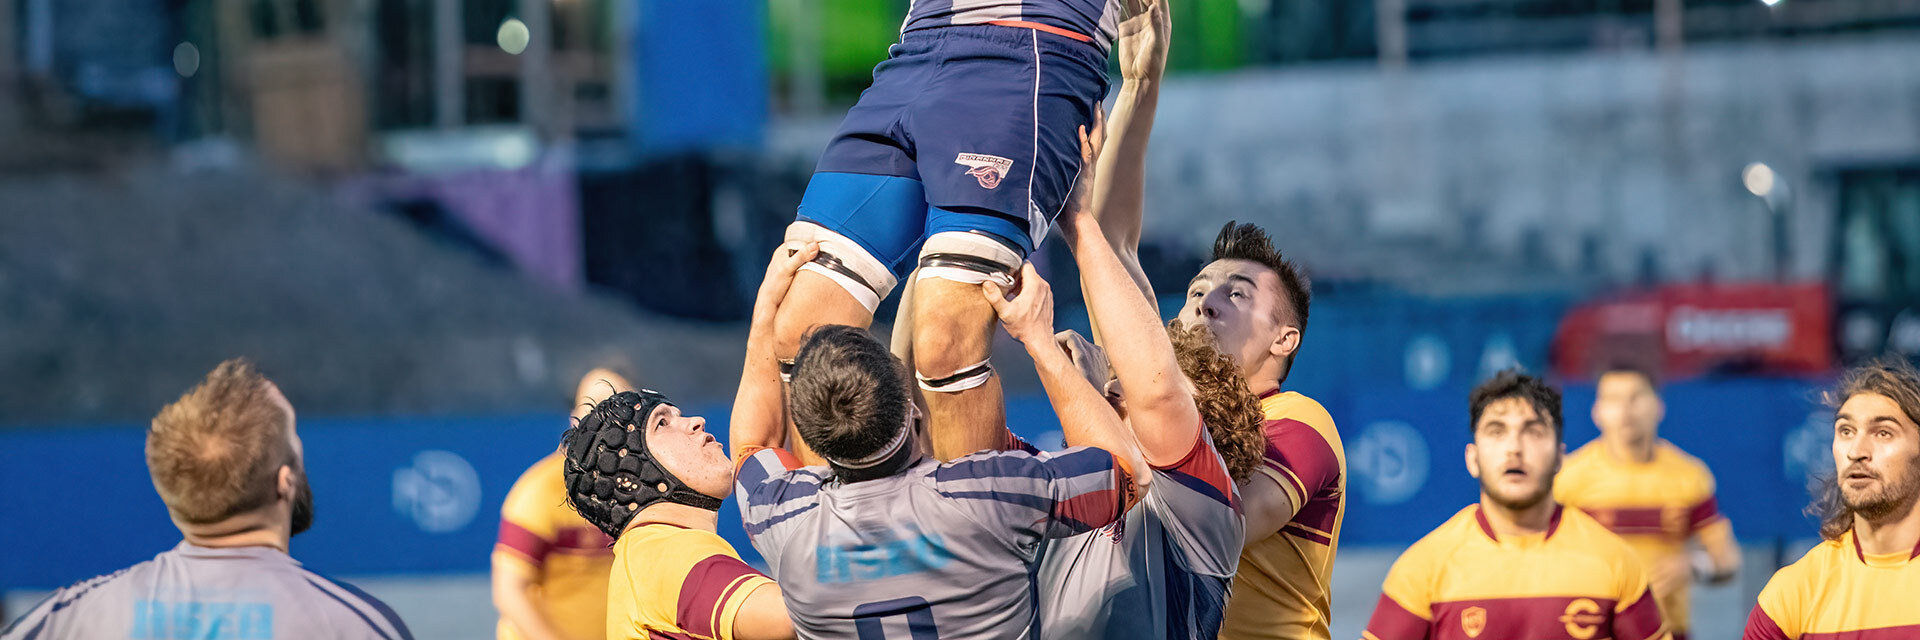 Étudiants en action lors d'un match de rugby, démontrant l'esprit d'équipe et l'excellence sportive.